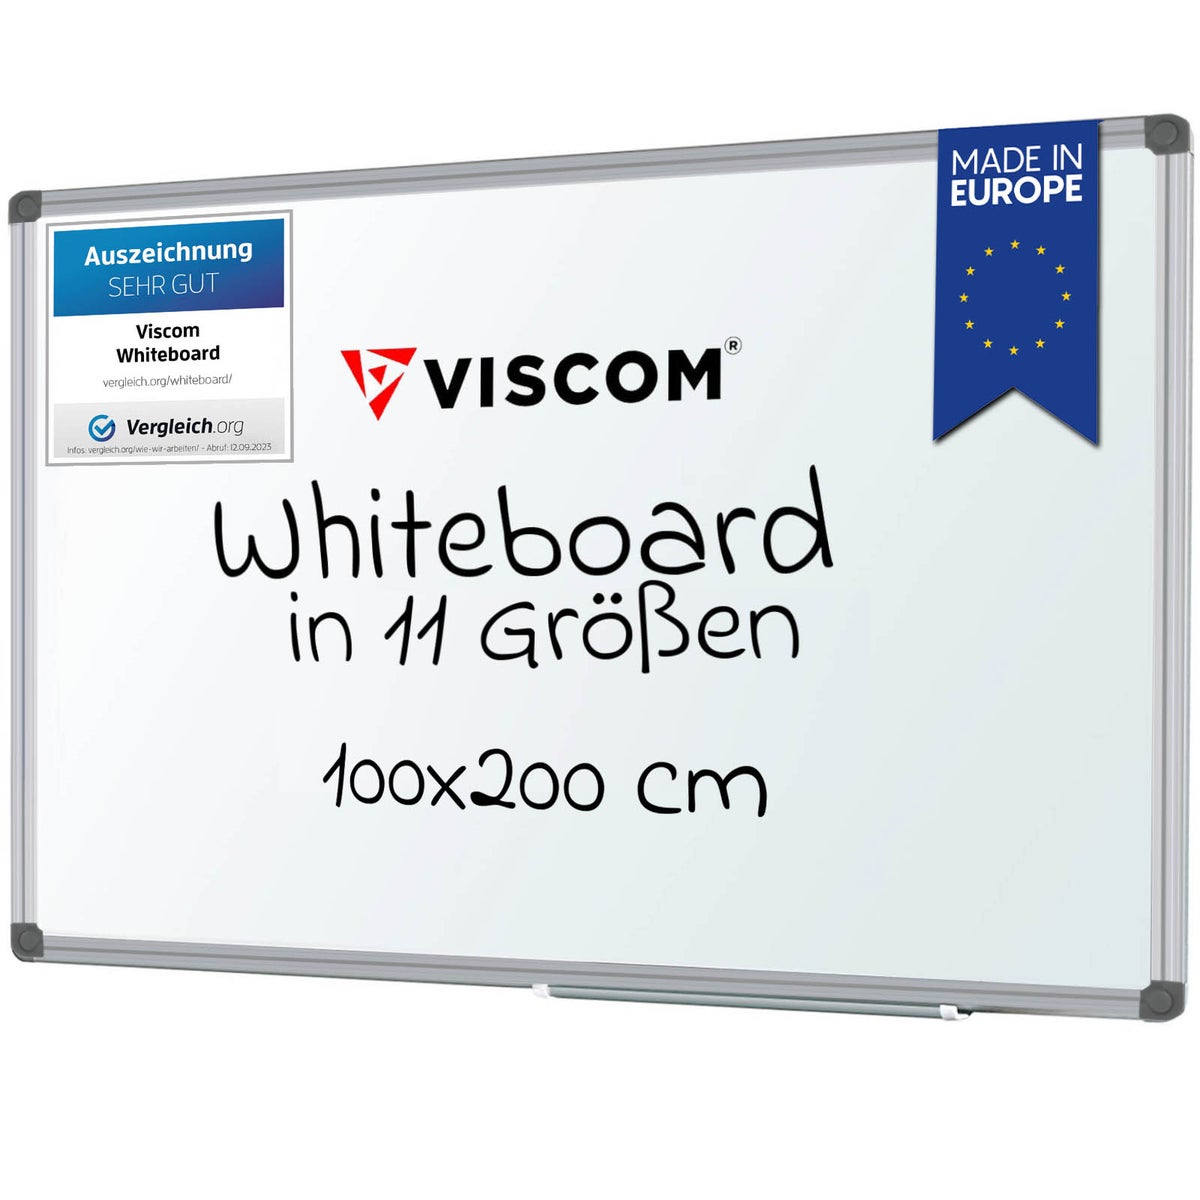 VISCOM Whiteboard magnetisch - 100 x 200 cm - Magnettafel für Büro & Zuhause - Magnetwand, kratzfest & beschreibbar - mit Aluminium-Rahmen - für Hoch- und Querformat